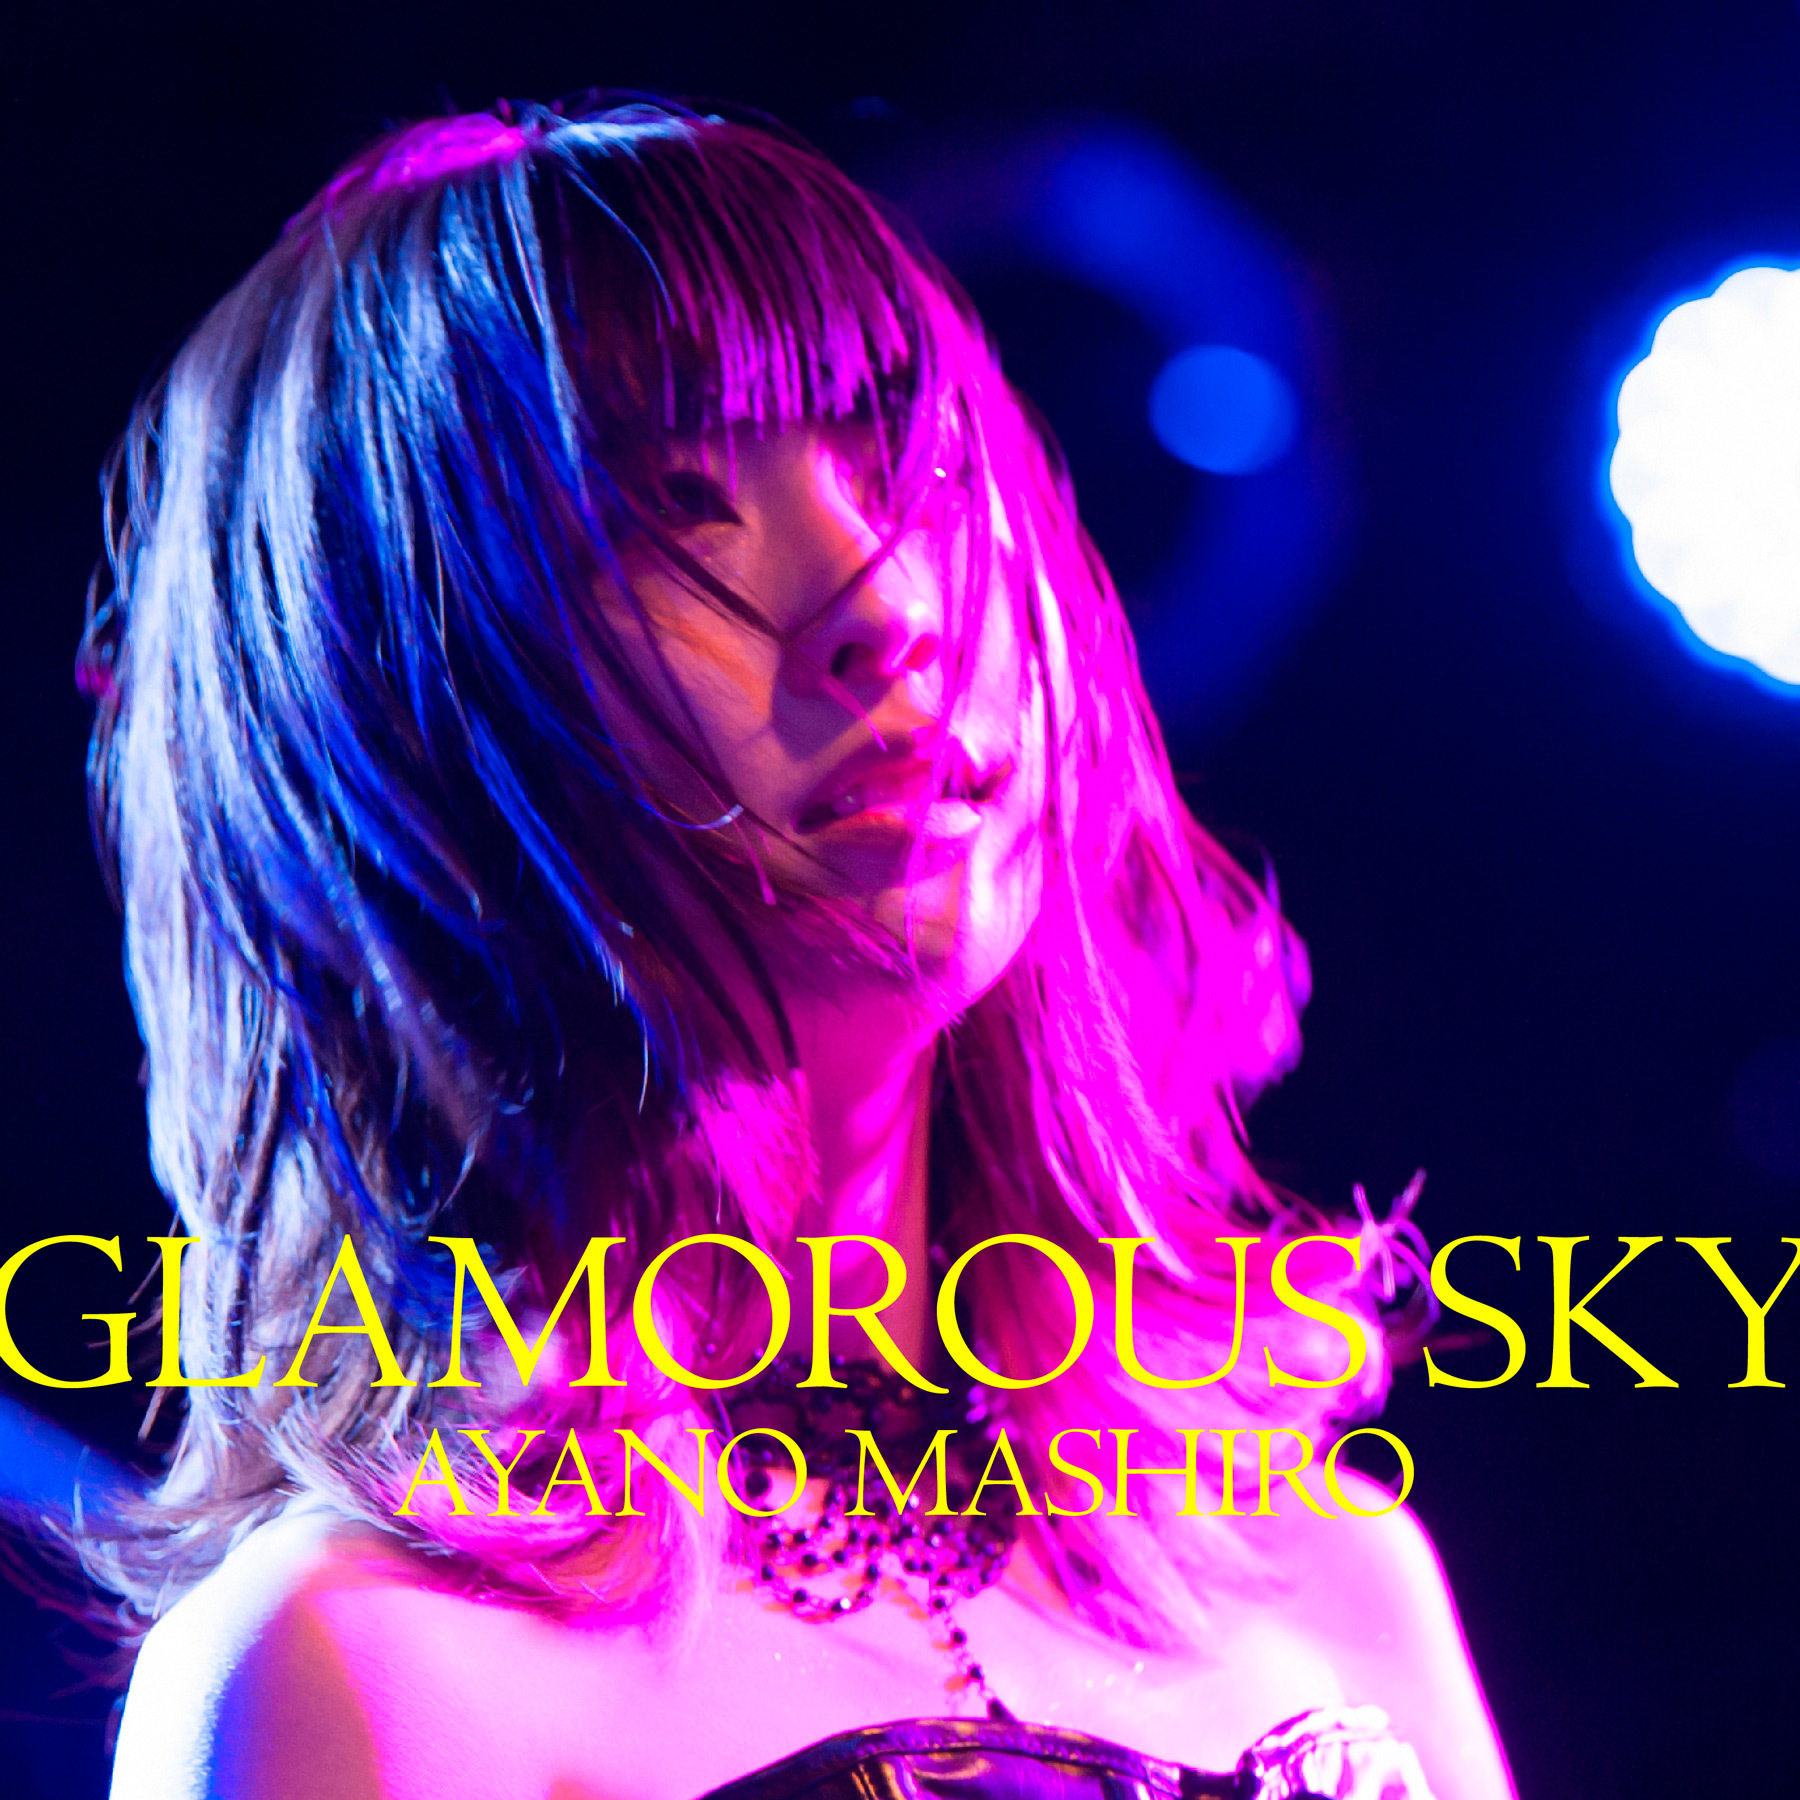 綾野ましろ「GLAMOROUS SKY」配信用ビジュアル photo by Makiko Takada